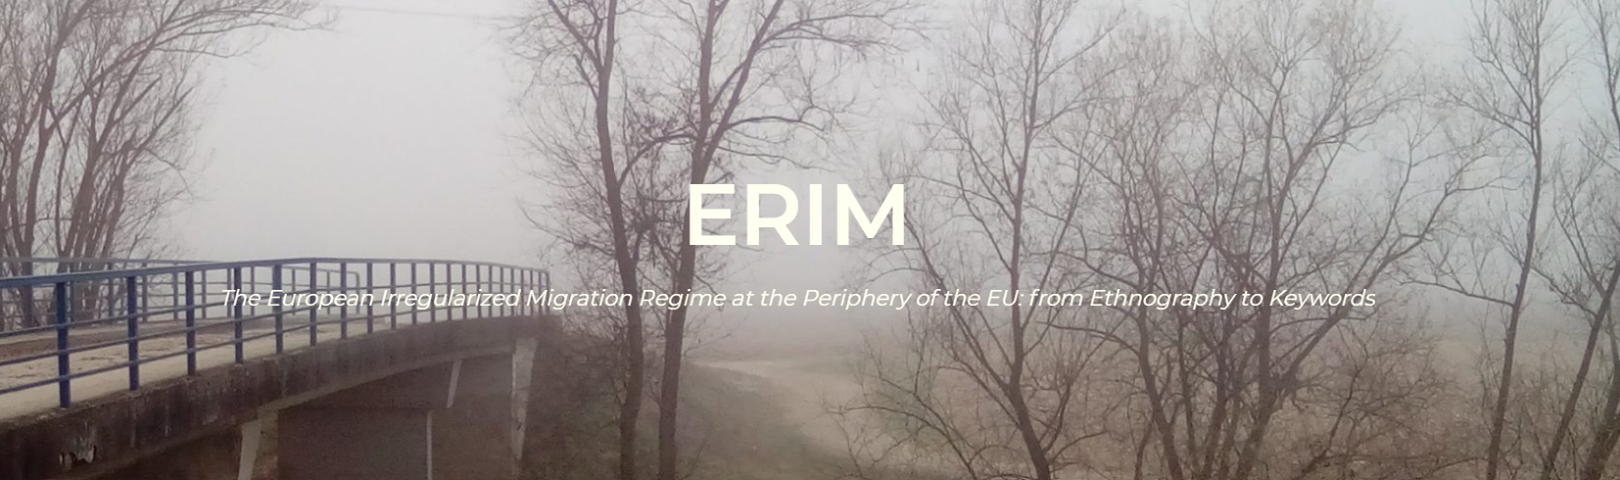 Predstavljanje projekta ERIM